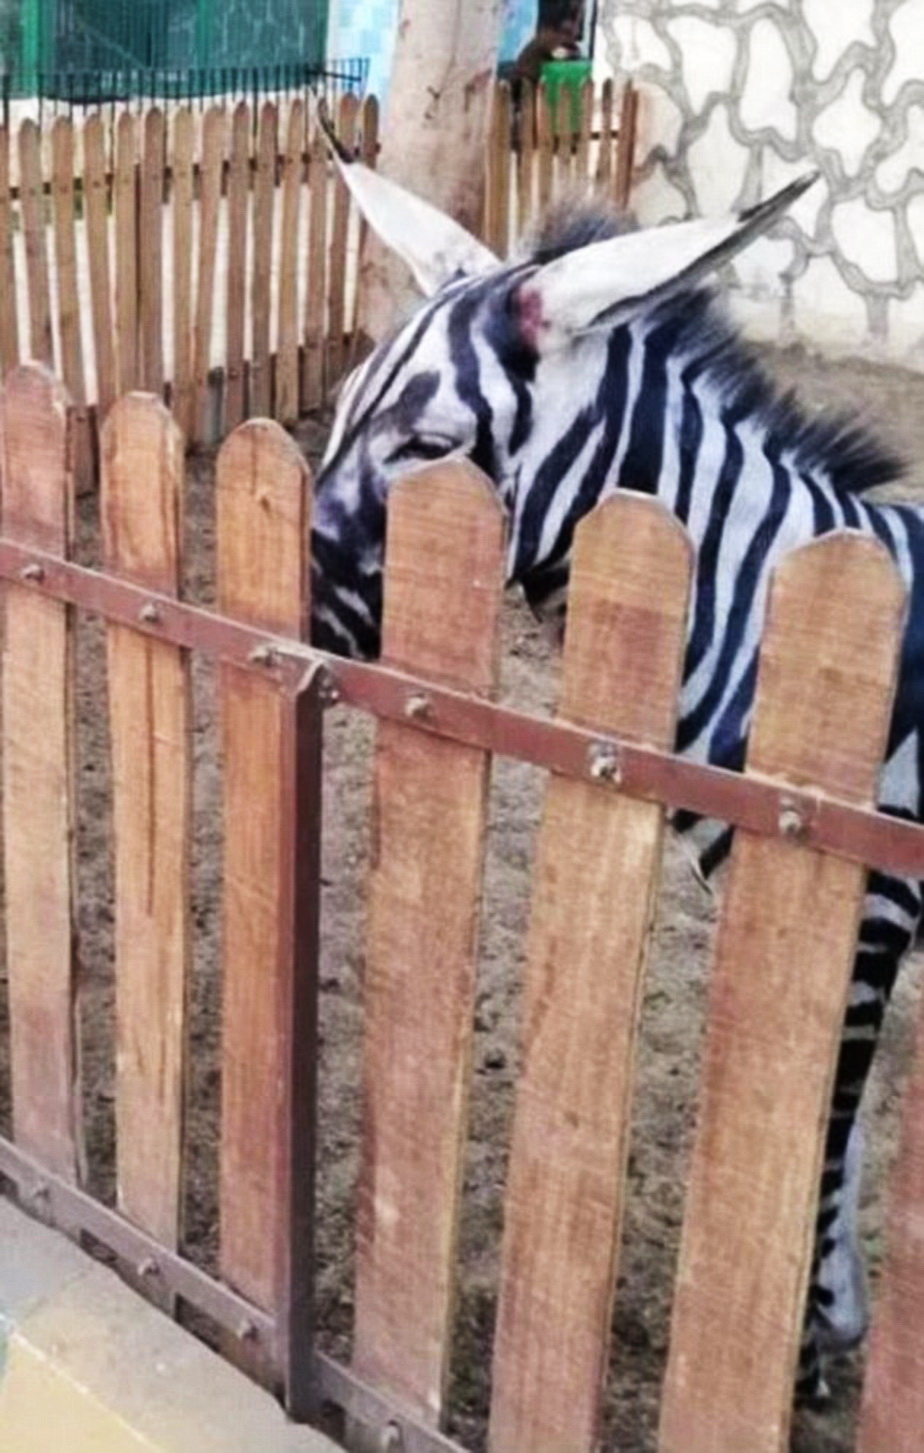 Farsă pe banii vizitatorilor la zoo » Măgar pictat în loc de zebră